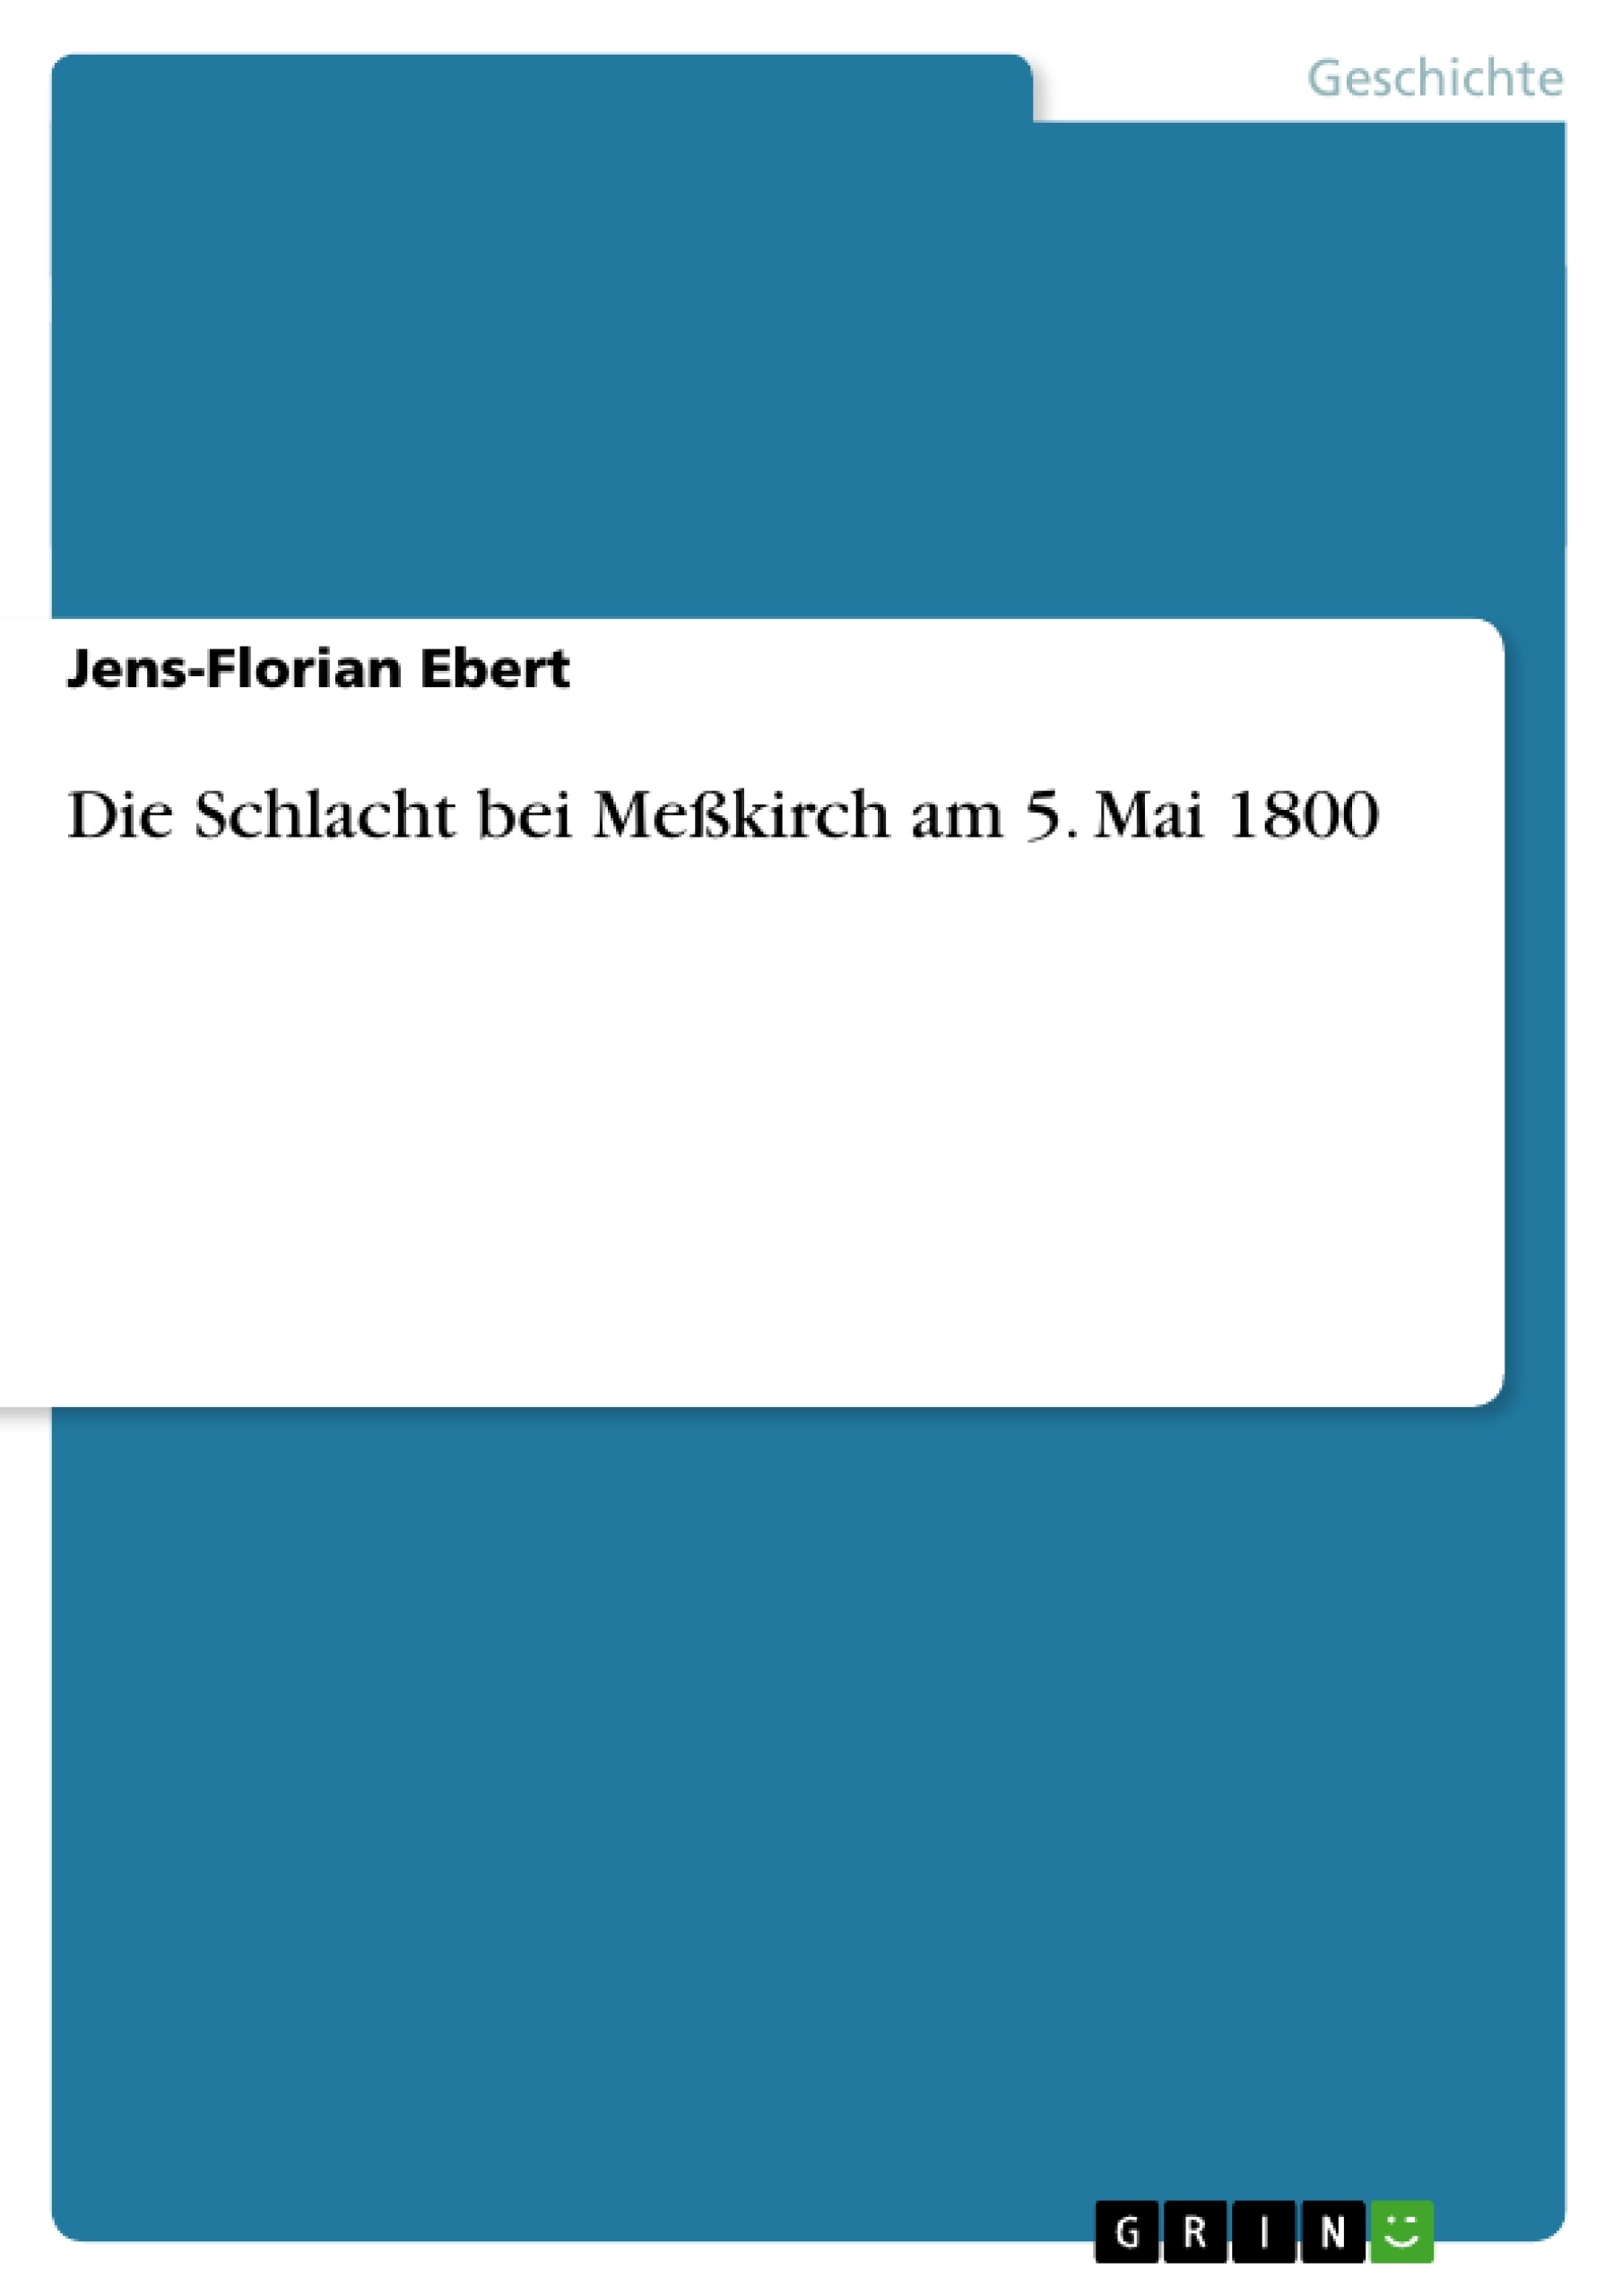 Titre: Die Schlacht bei Meßkirch am 5. Mai 1800